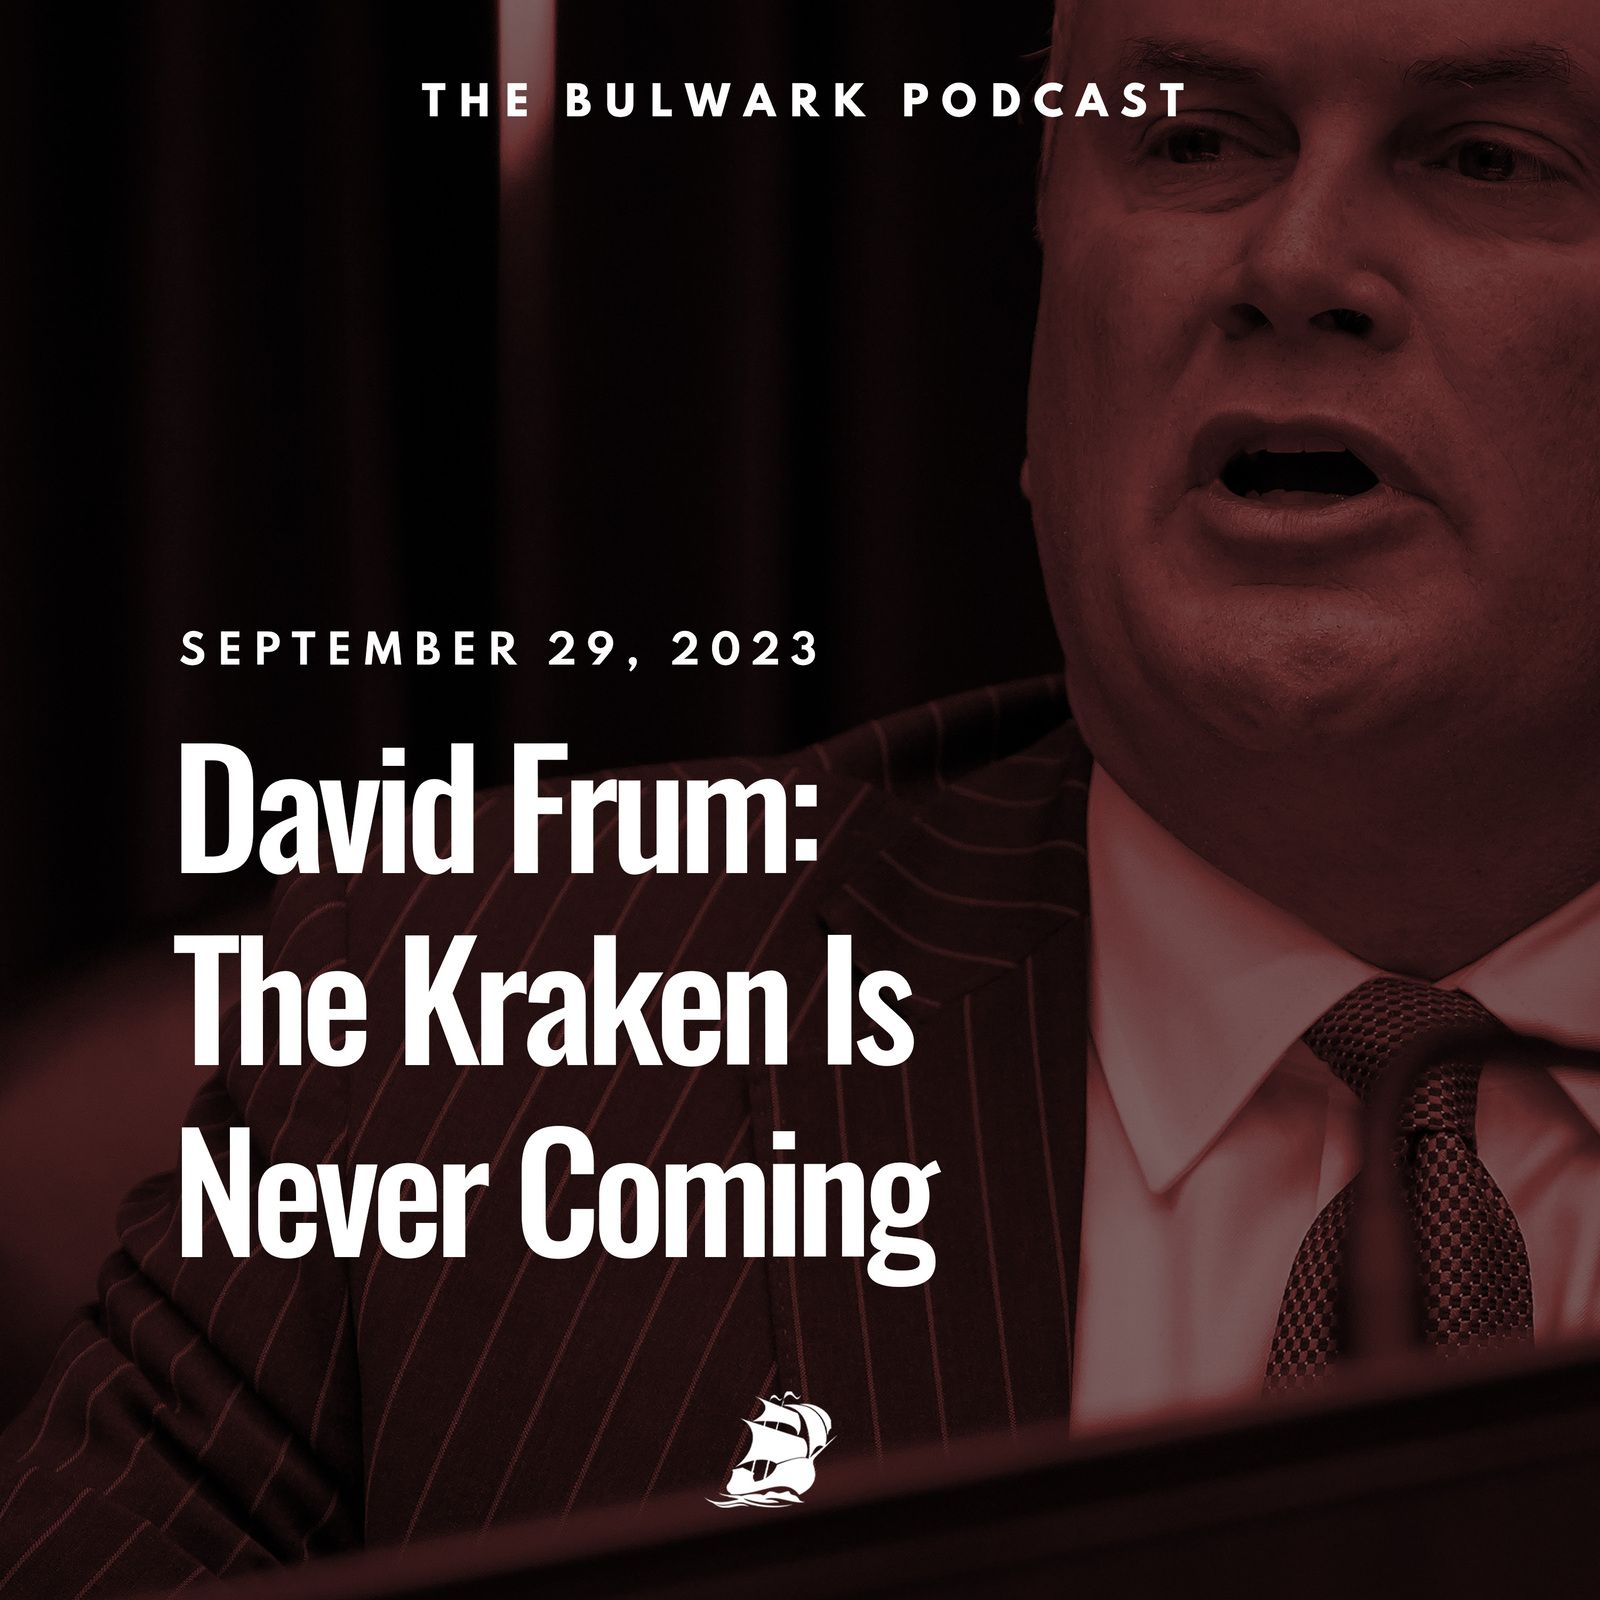 David Frum: The Kraken Is Never Coming